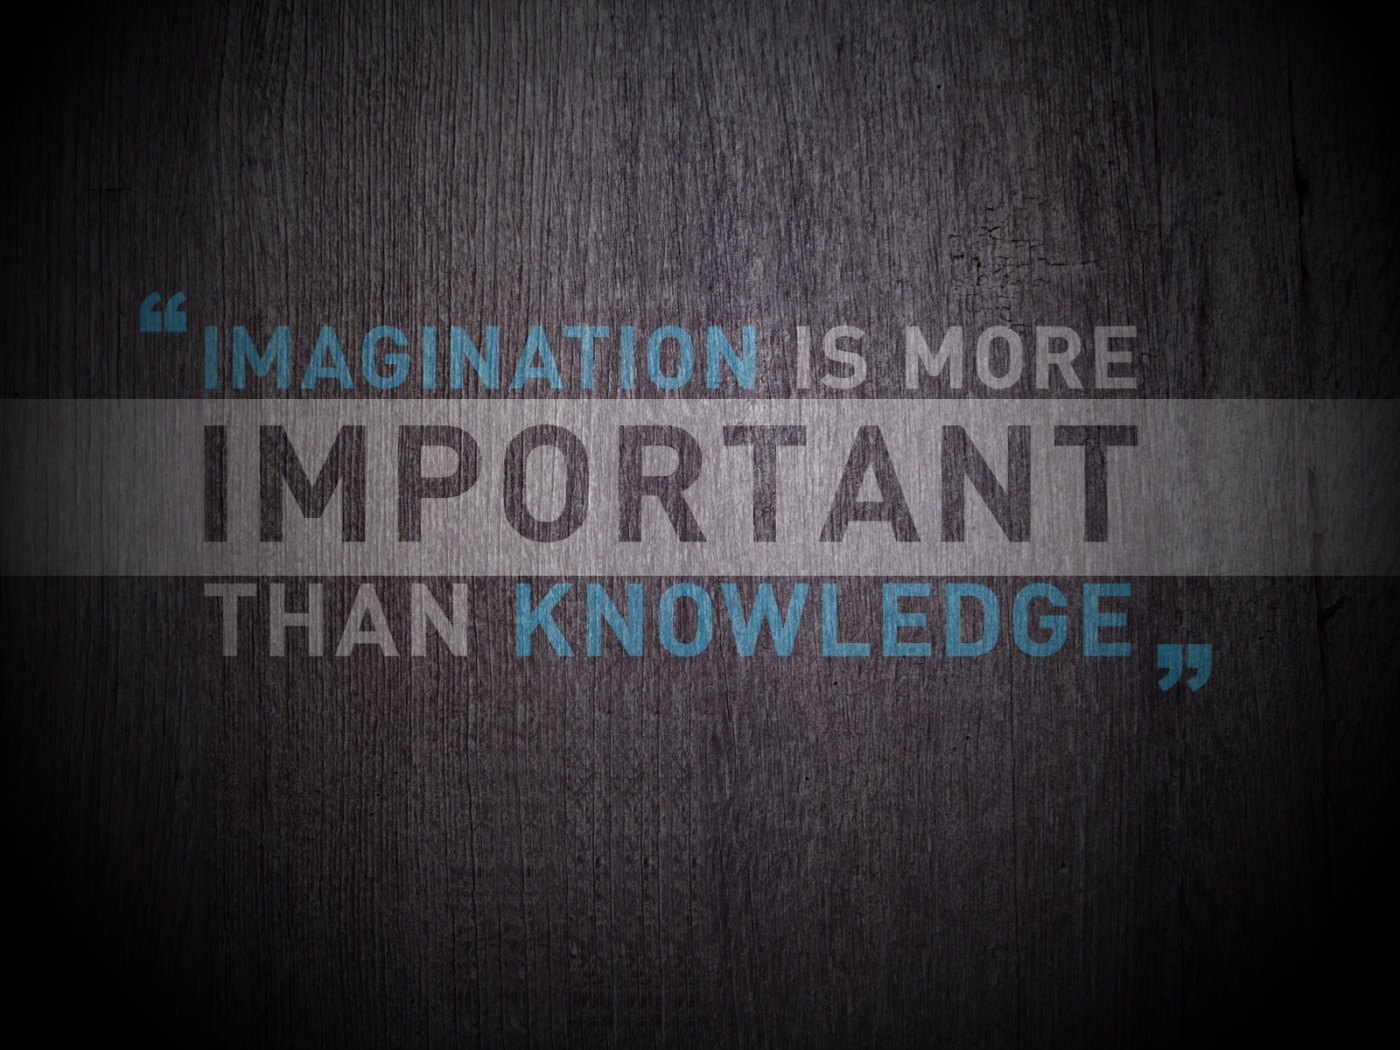 Imagination Vs Knowledge